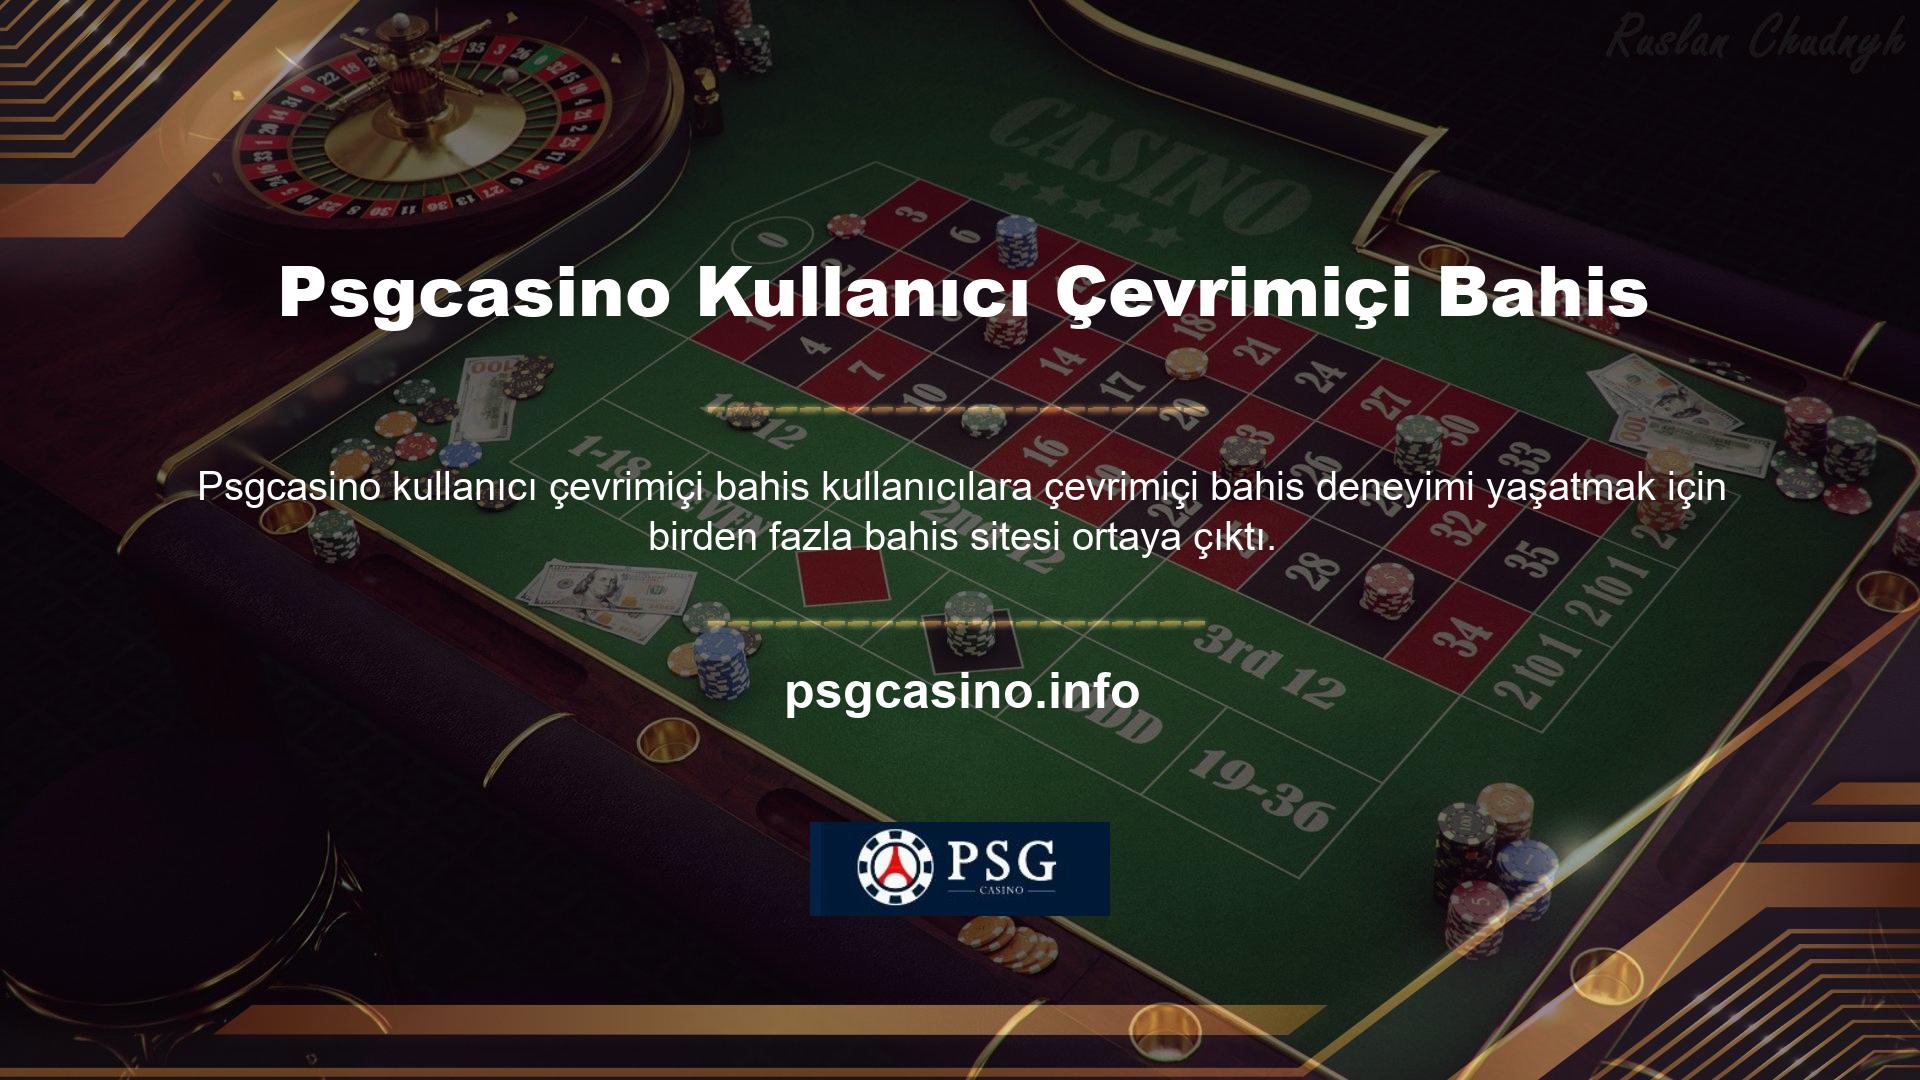 Psgcasino sitesi veya internet casino seçerken oyun çeşitliliğine, kolay para yatırma ve çekme yöntemlerine ve tatmin edici promosyonlara dikkat etmelisiniz